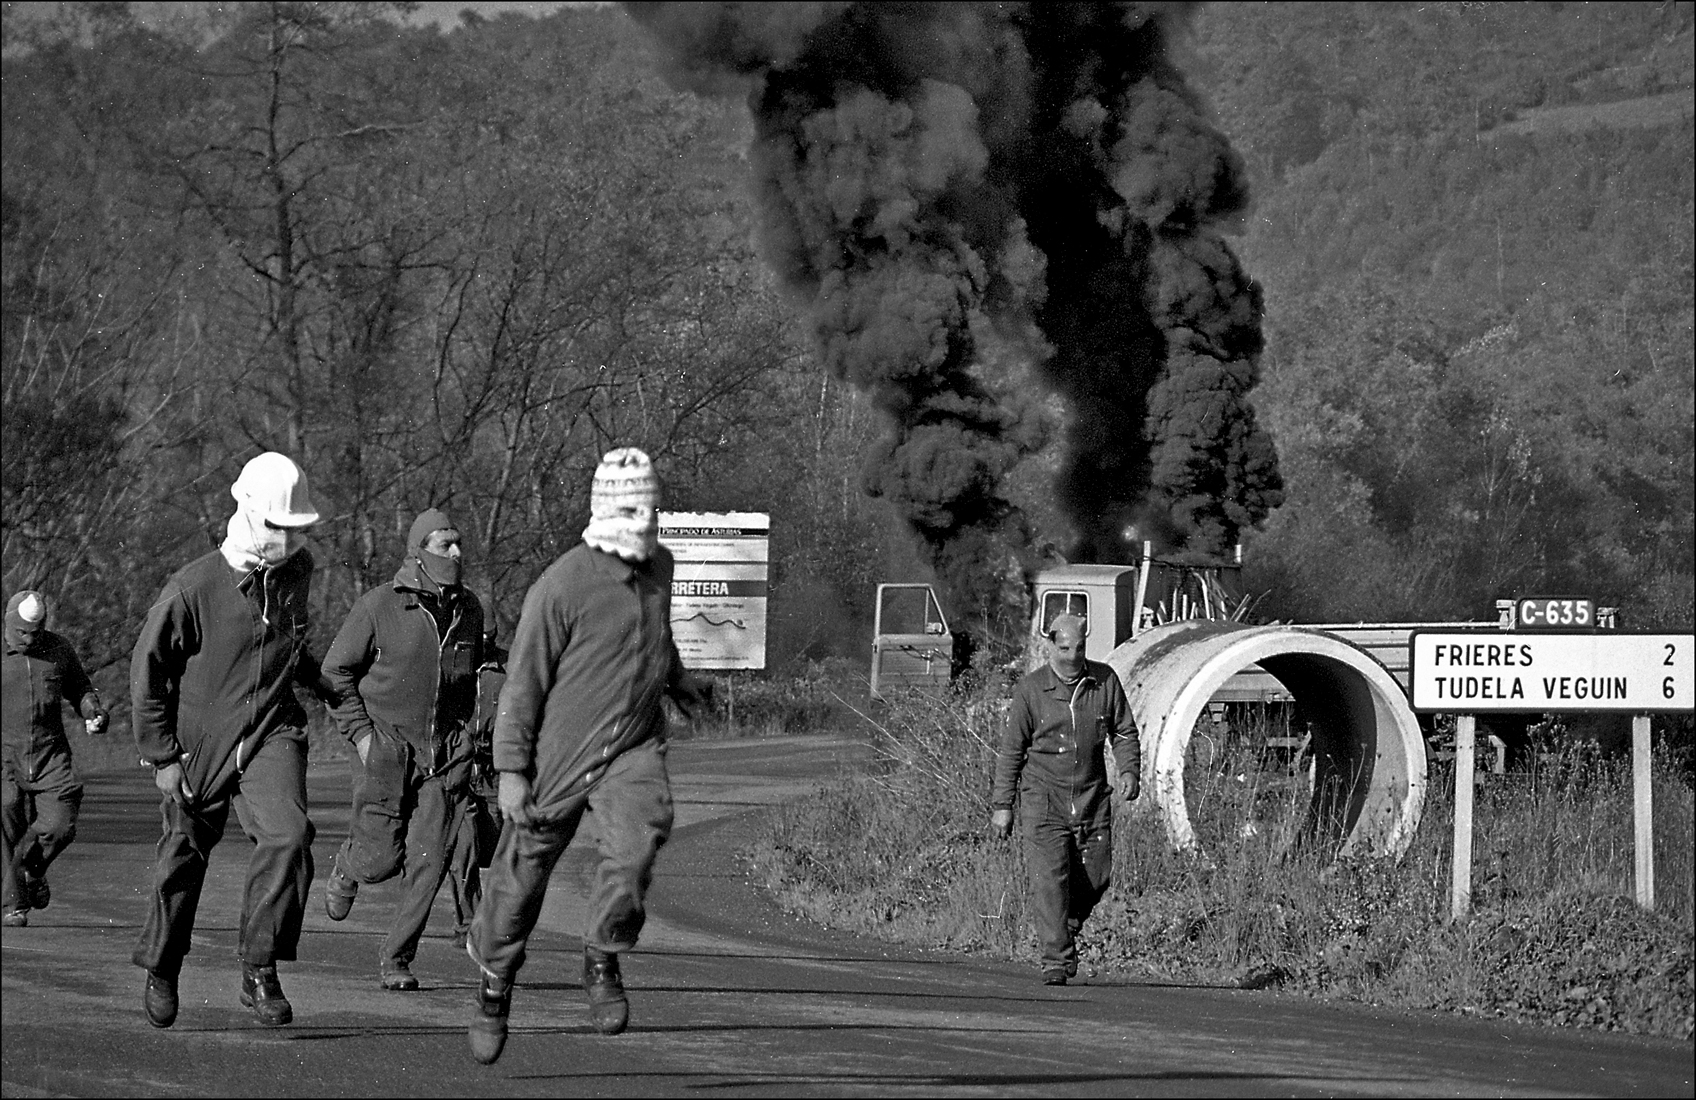 31 - Incendio de un camion de Obras Publicas por los trabajadores despedidos de la empresa Duro-Felguera. Langreo. Asturias 1993.tif - BN